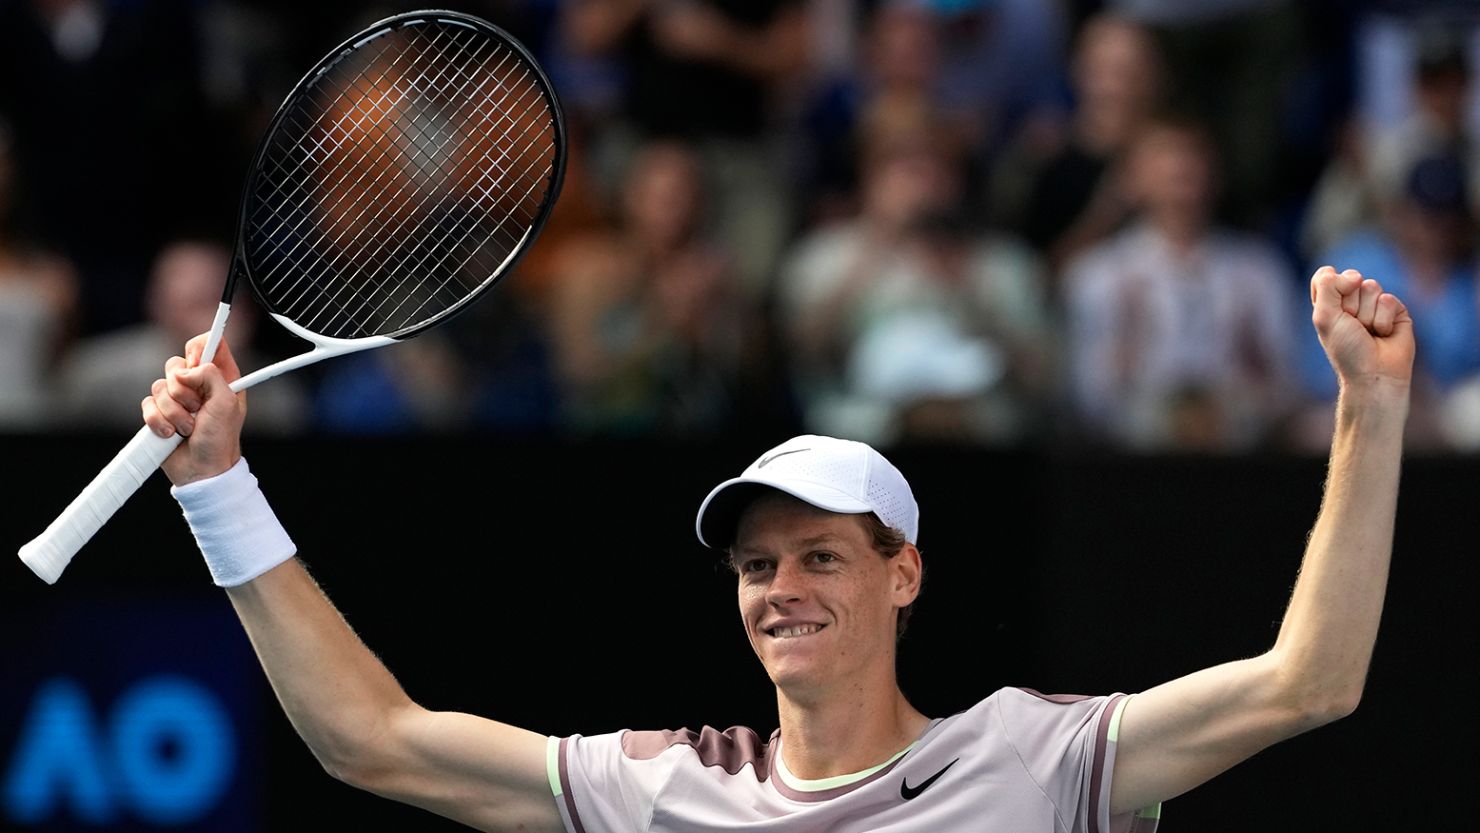 Australian Open Jannik Sinner faces Danlil Medvedev in the men’s final